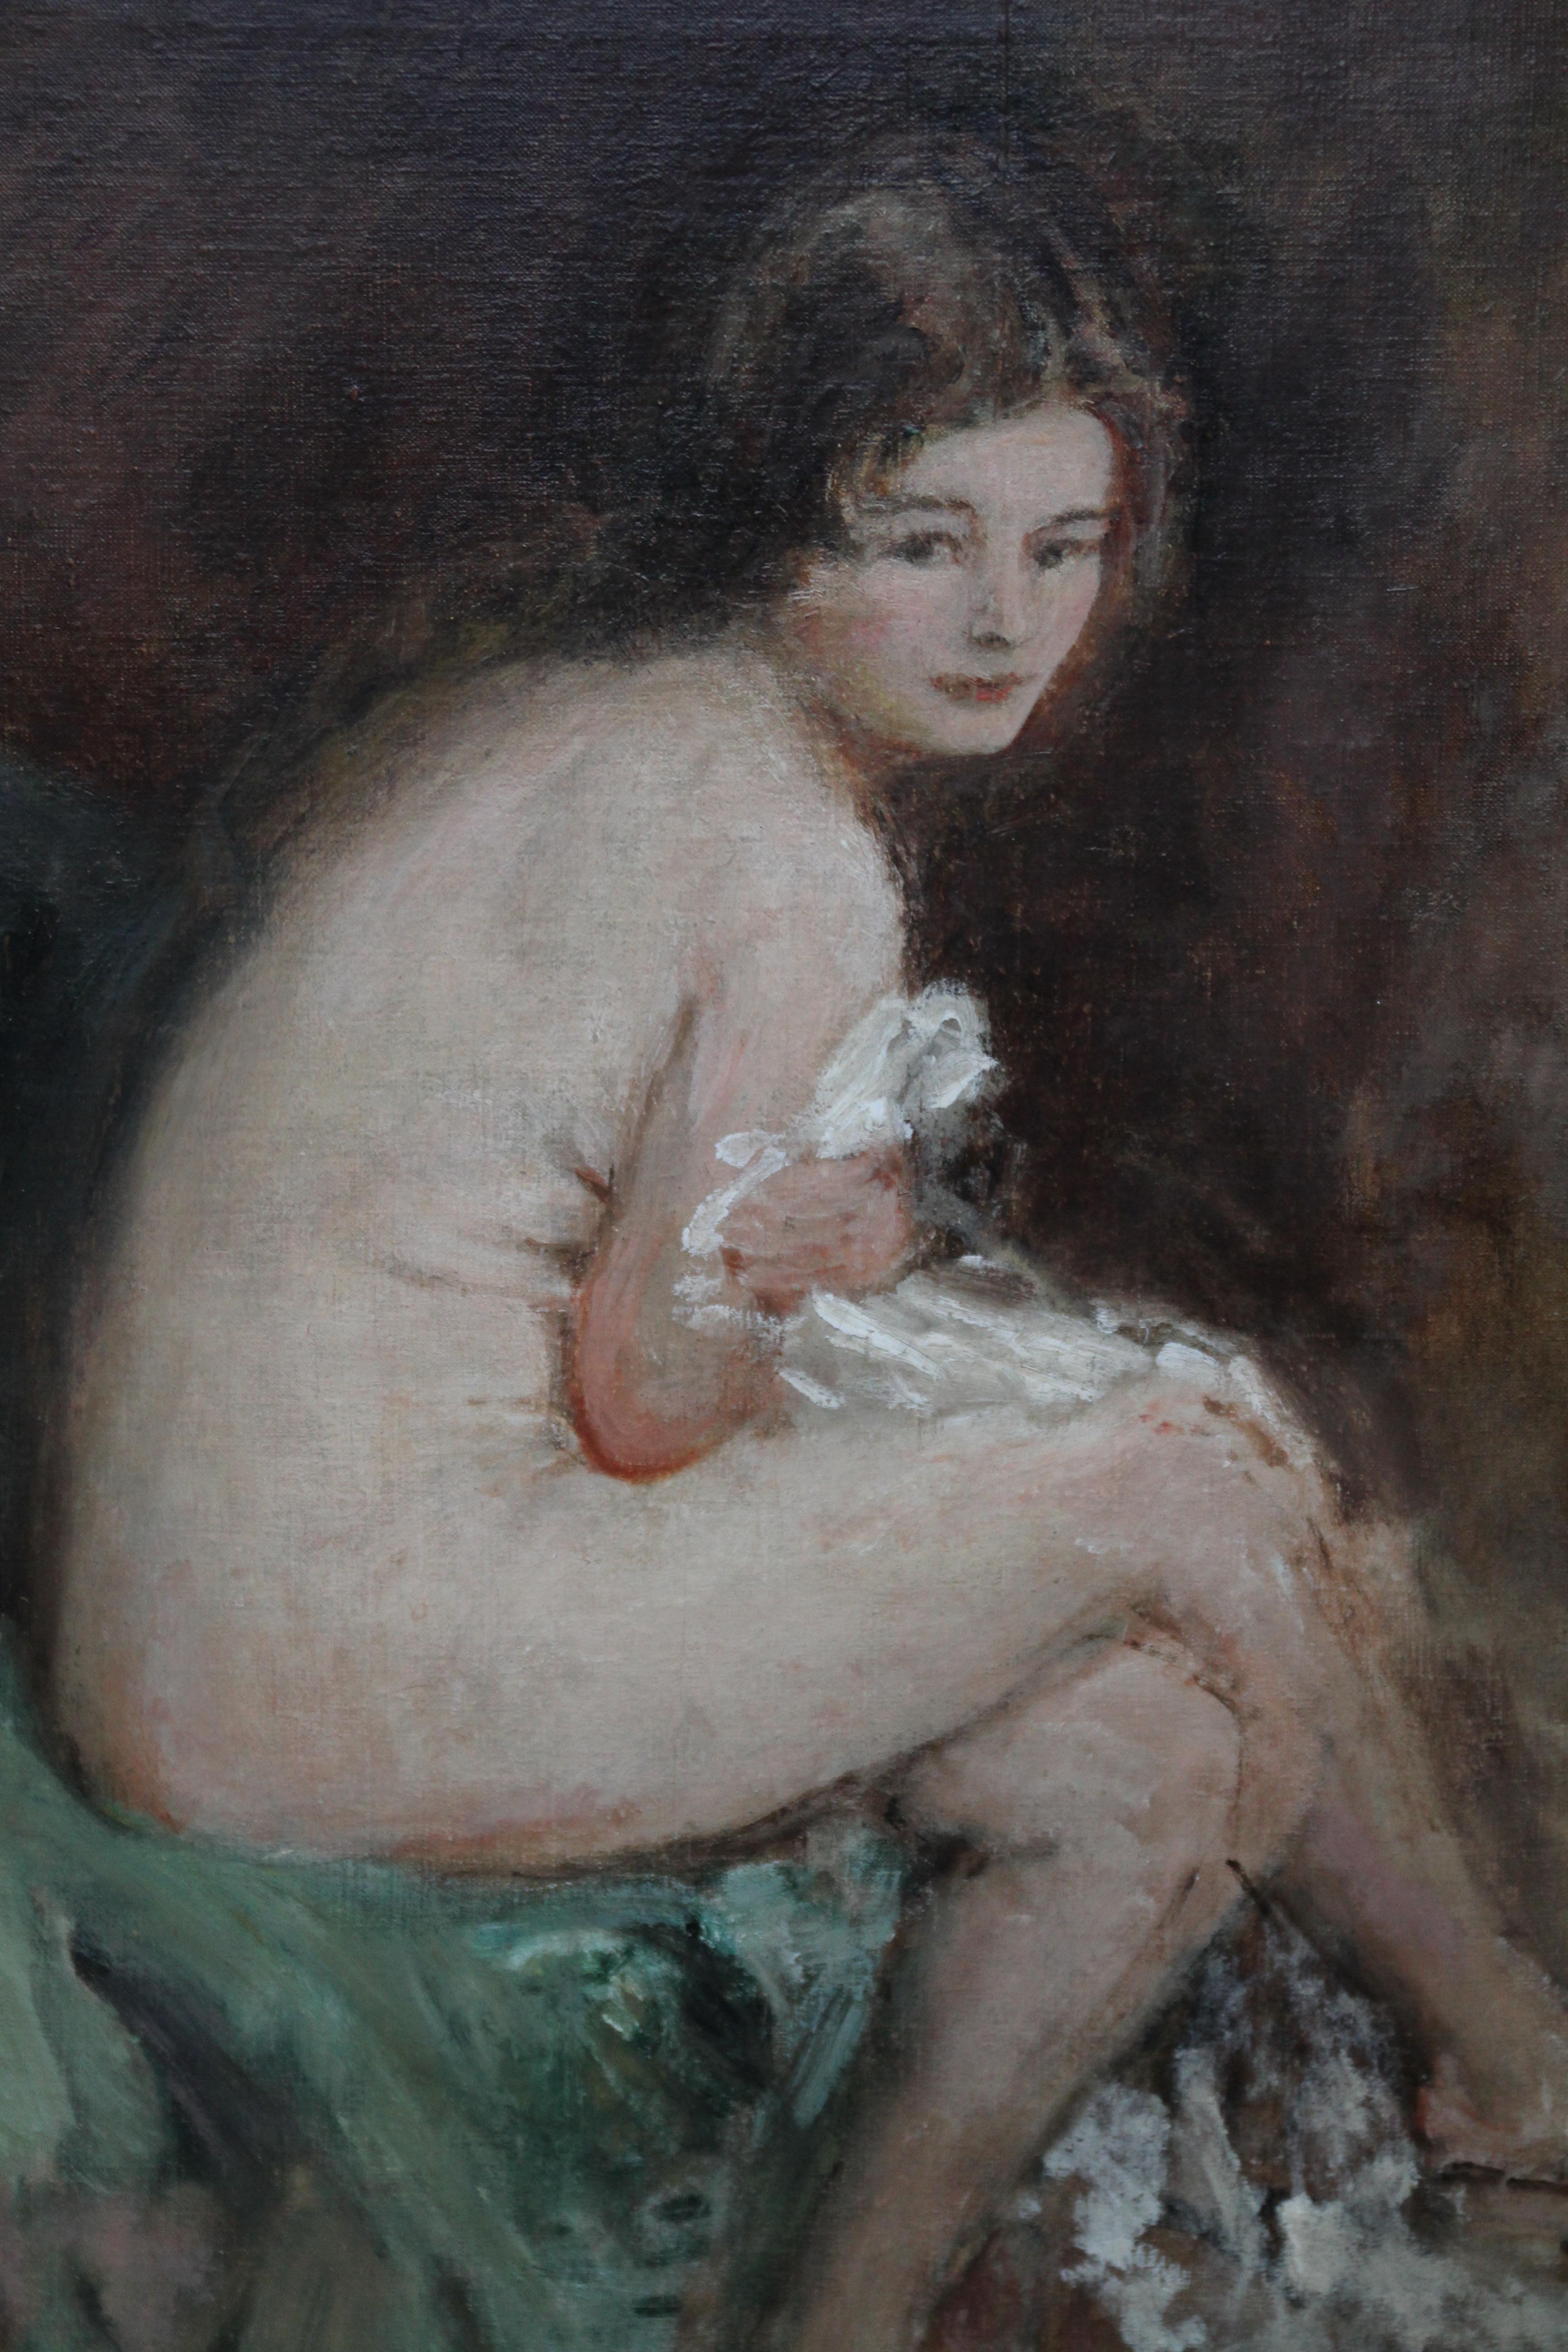 Cette charmante huile sur toile impressionniste est l'œuvre de l'artiste britannique Philip Wilson Steer et bénéficie d'une excellente provenance. Le tableau, datant d'environ 1920, représente une jeune femme nue et assise, que Christie's a appelée